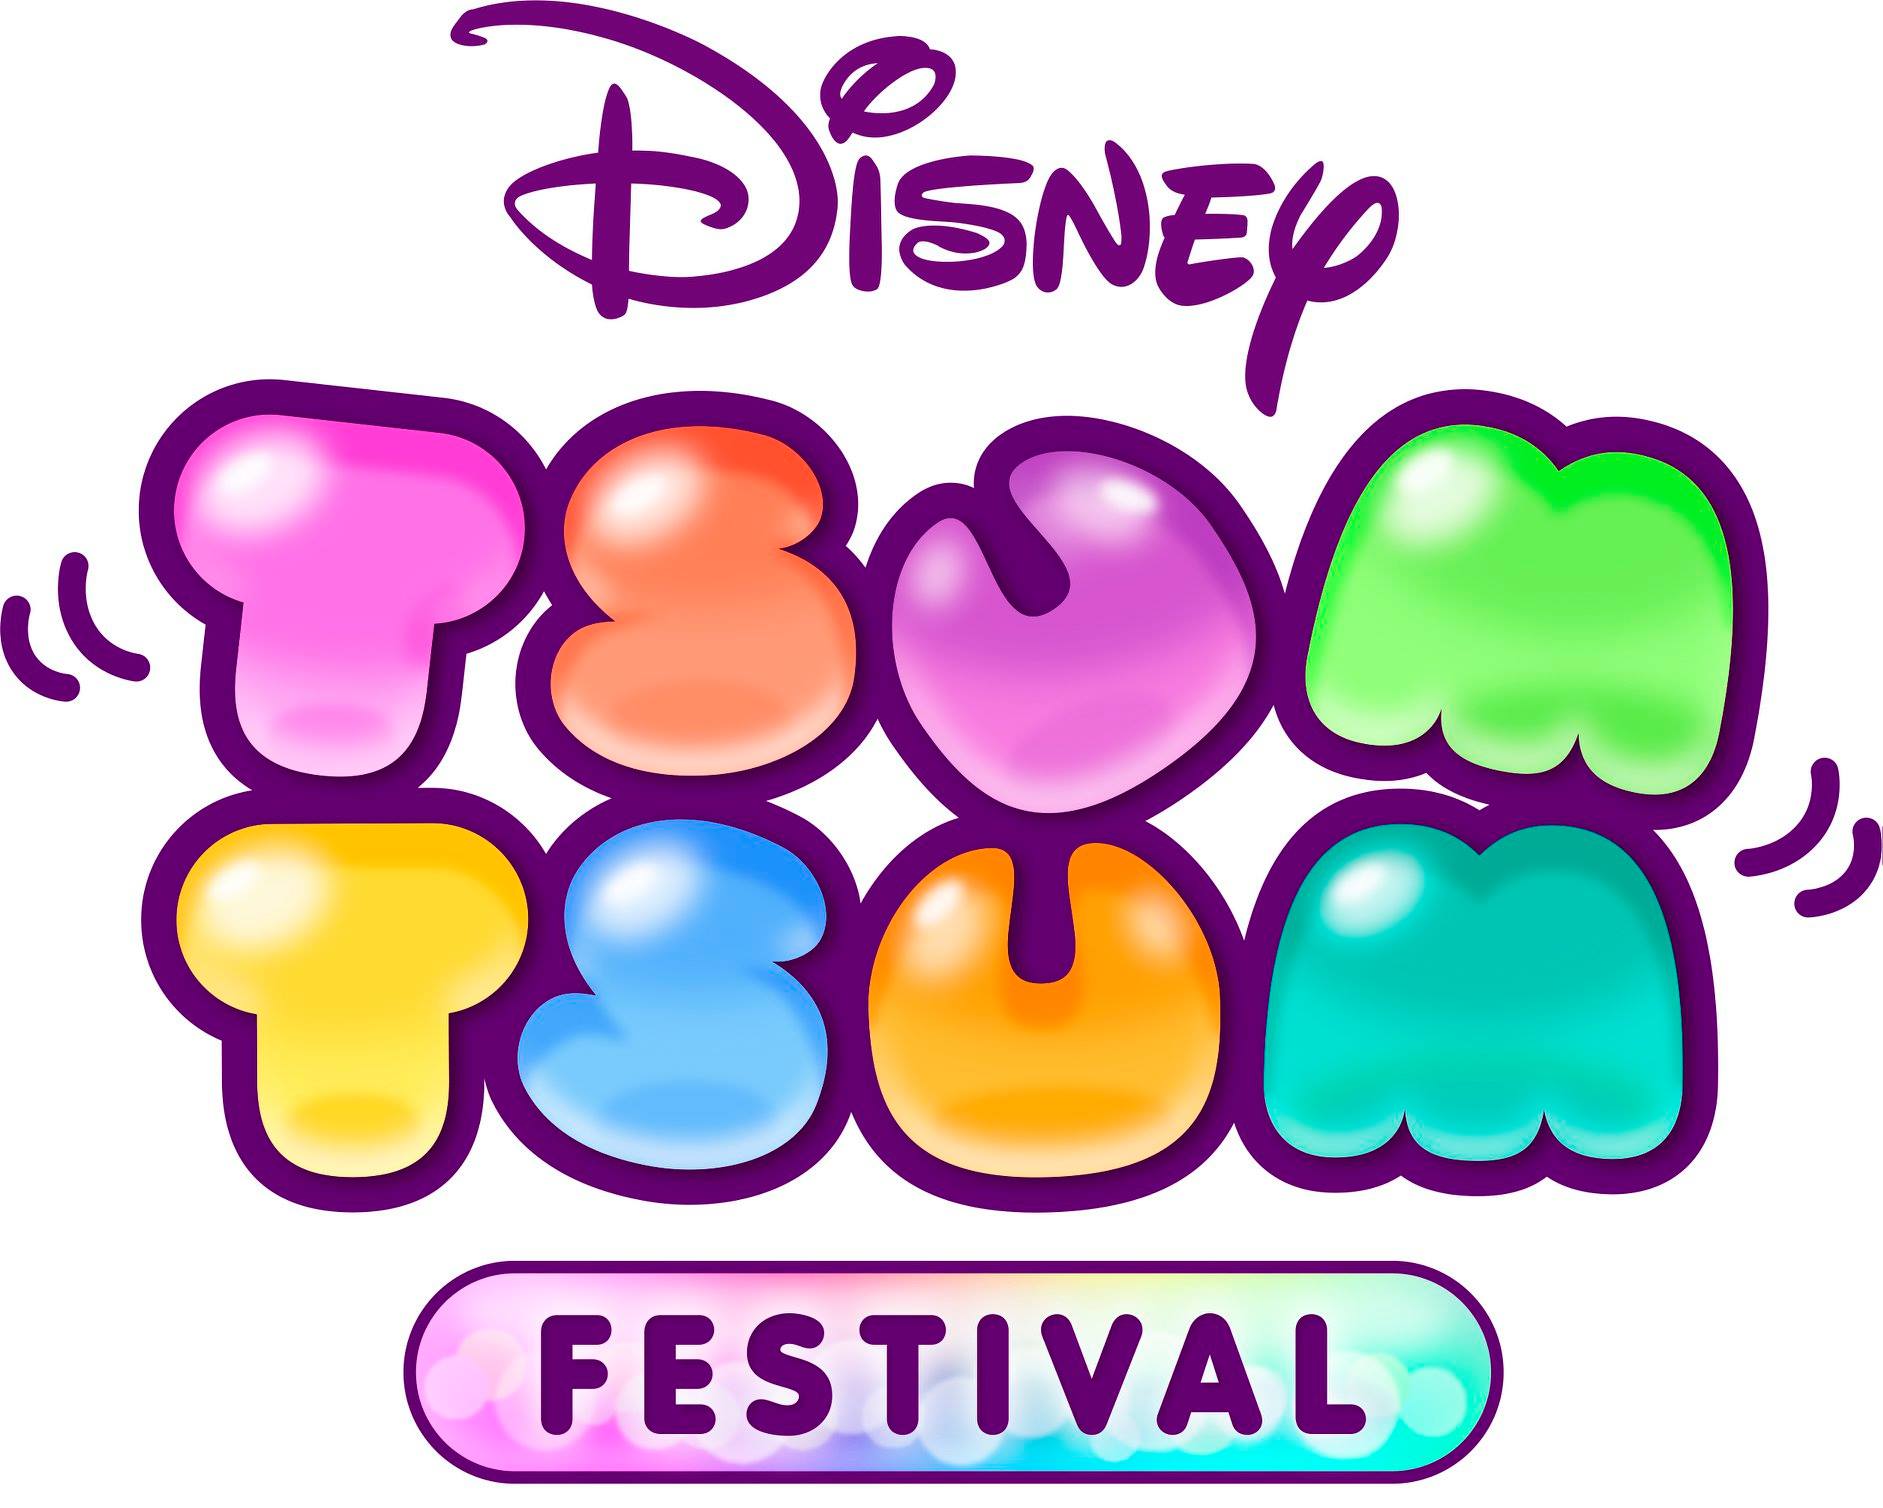 ตามข่าวด่วนของนิตยสาร "Switch" "Disney Tsum Tsum Carnival" มีกำหนดจะวางจำหน่ายในวันที่ 10 ตุลาคม 3